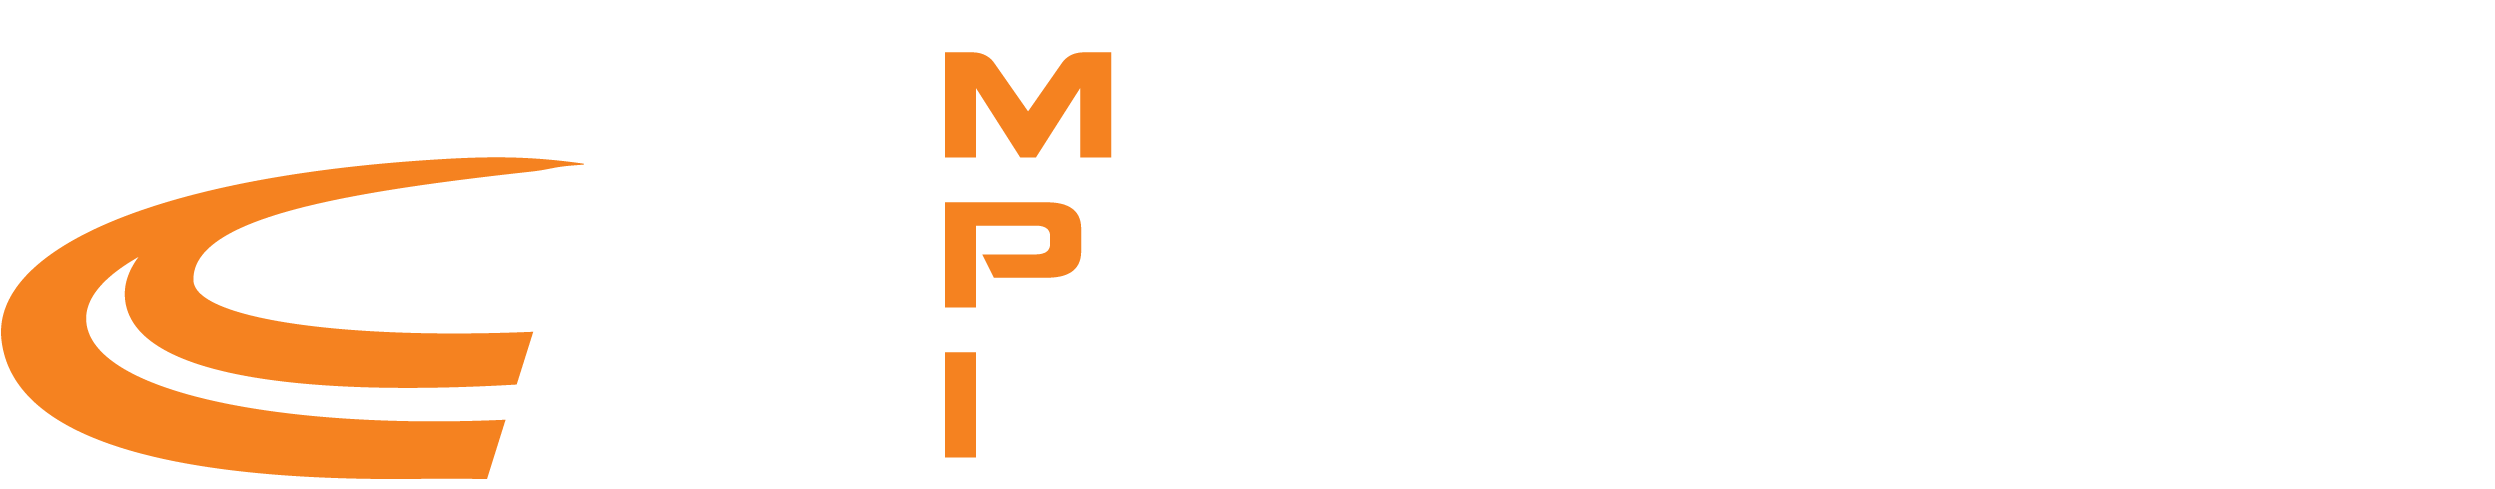 midwest prefab logo